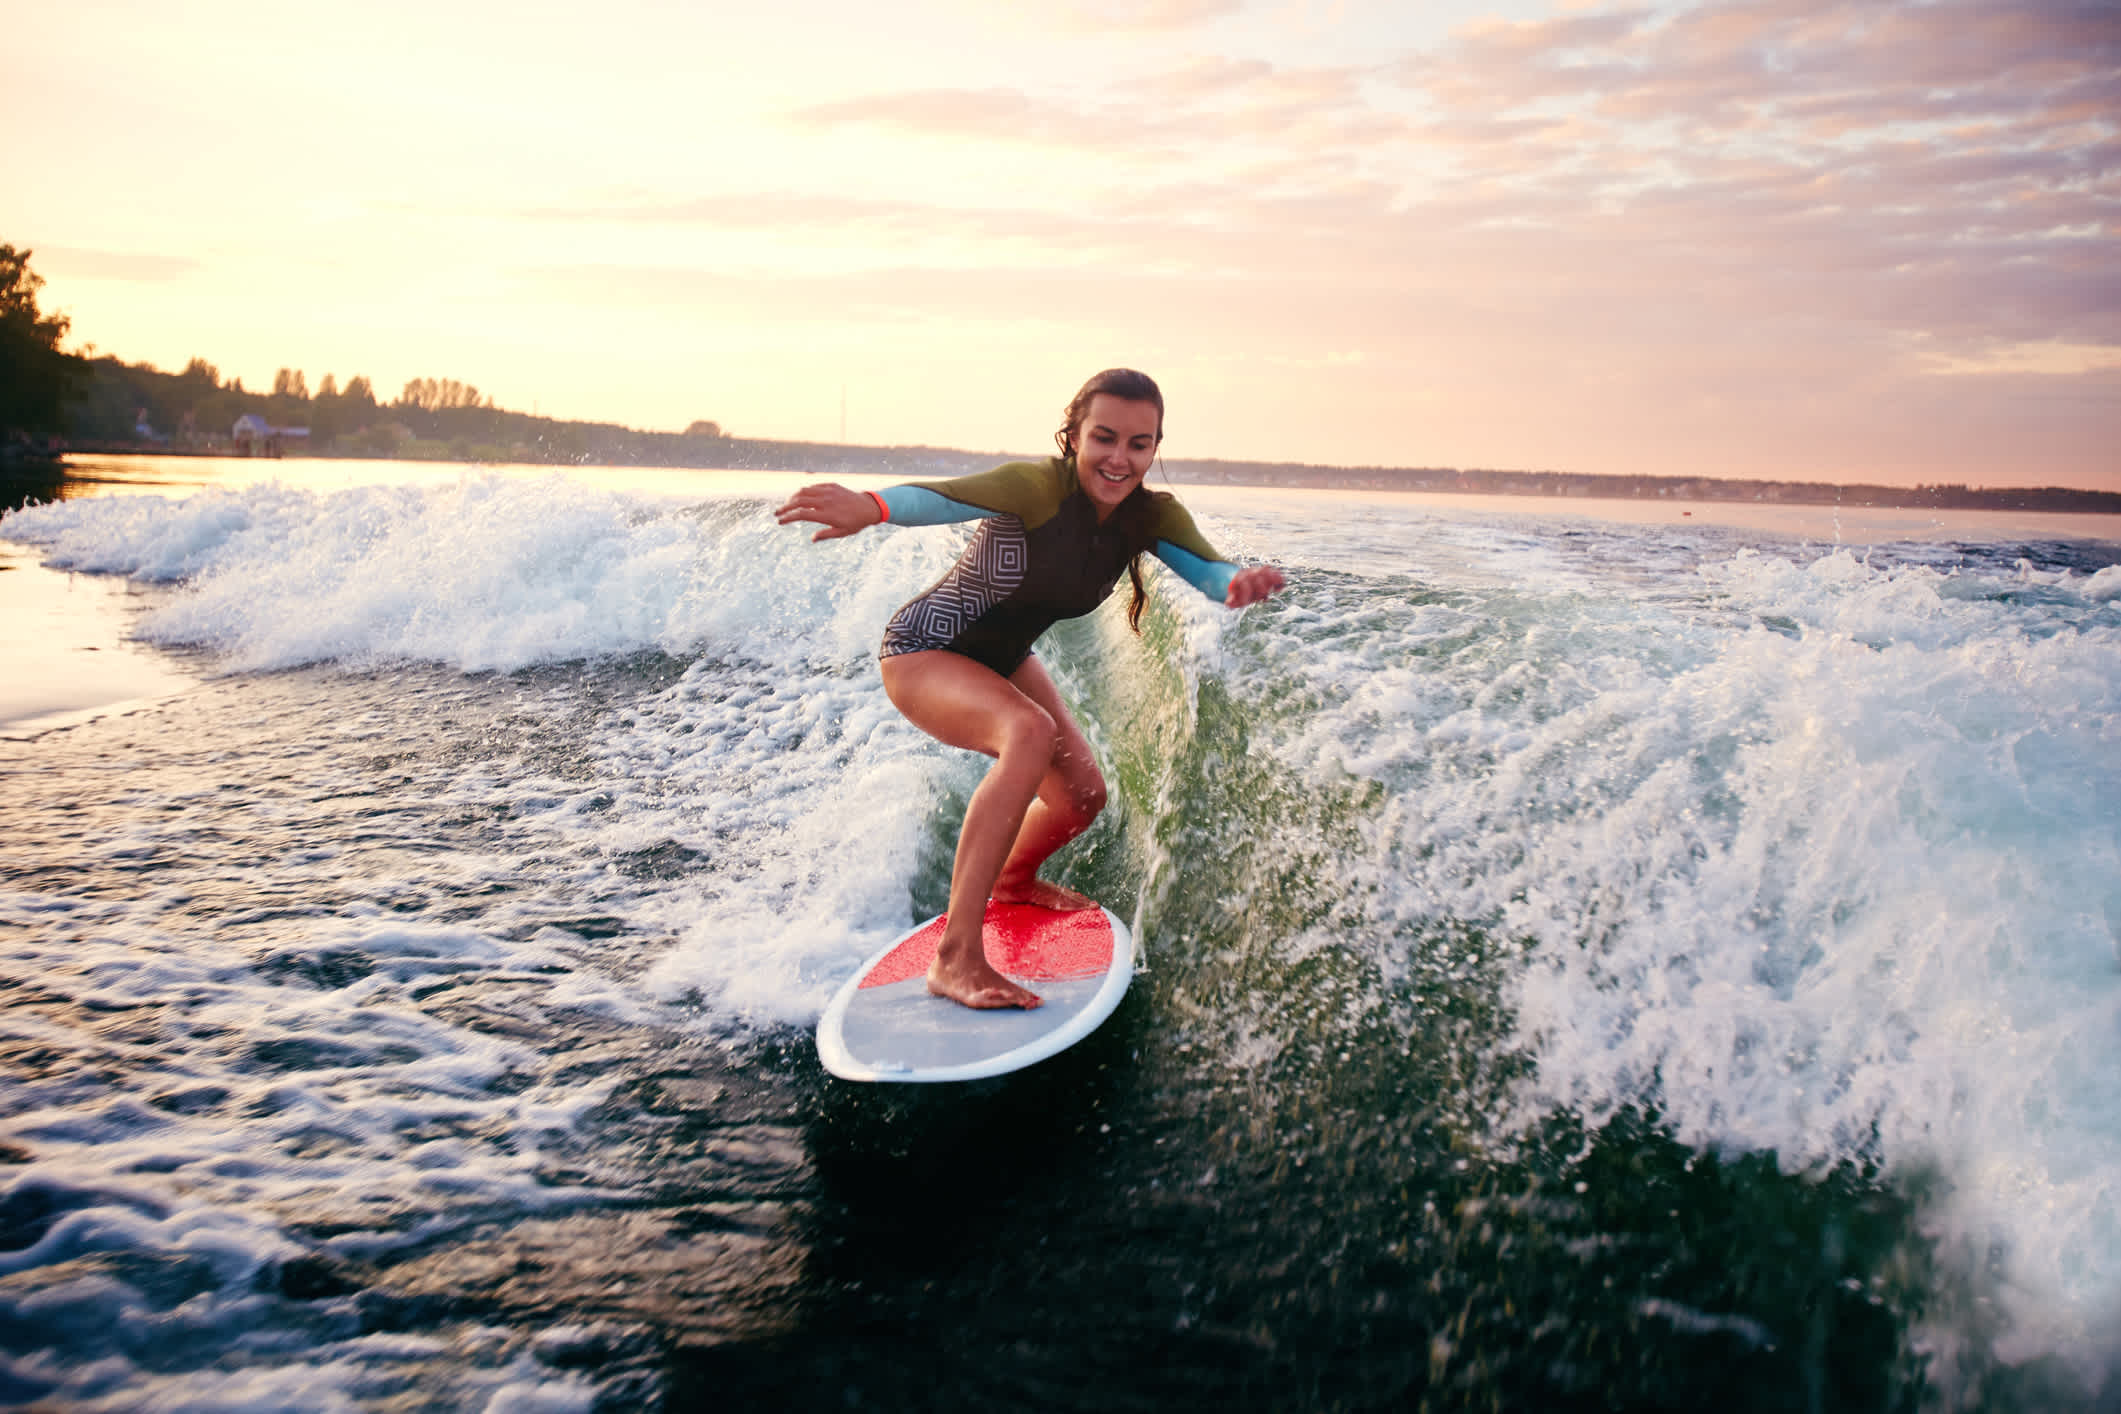 Jeune femme sur une planche de surf au coucher du soleil.
